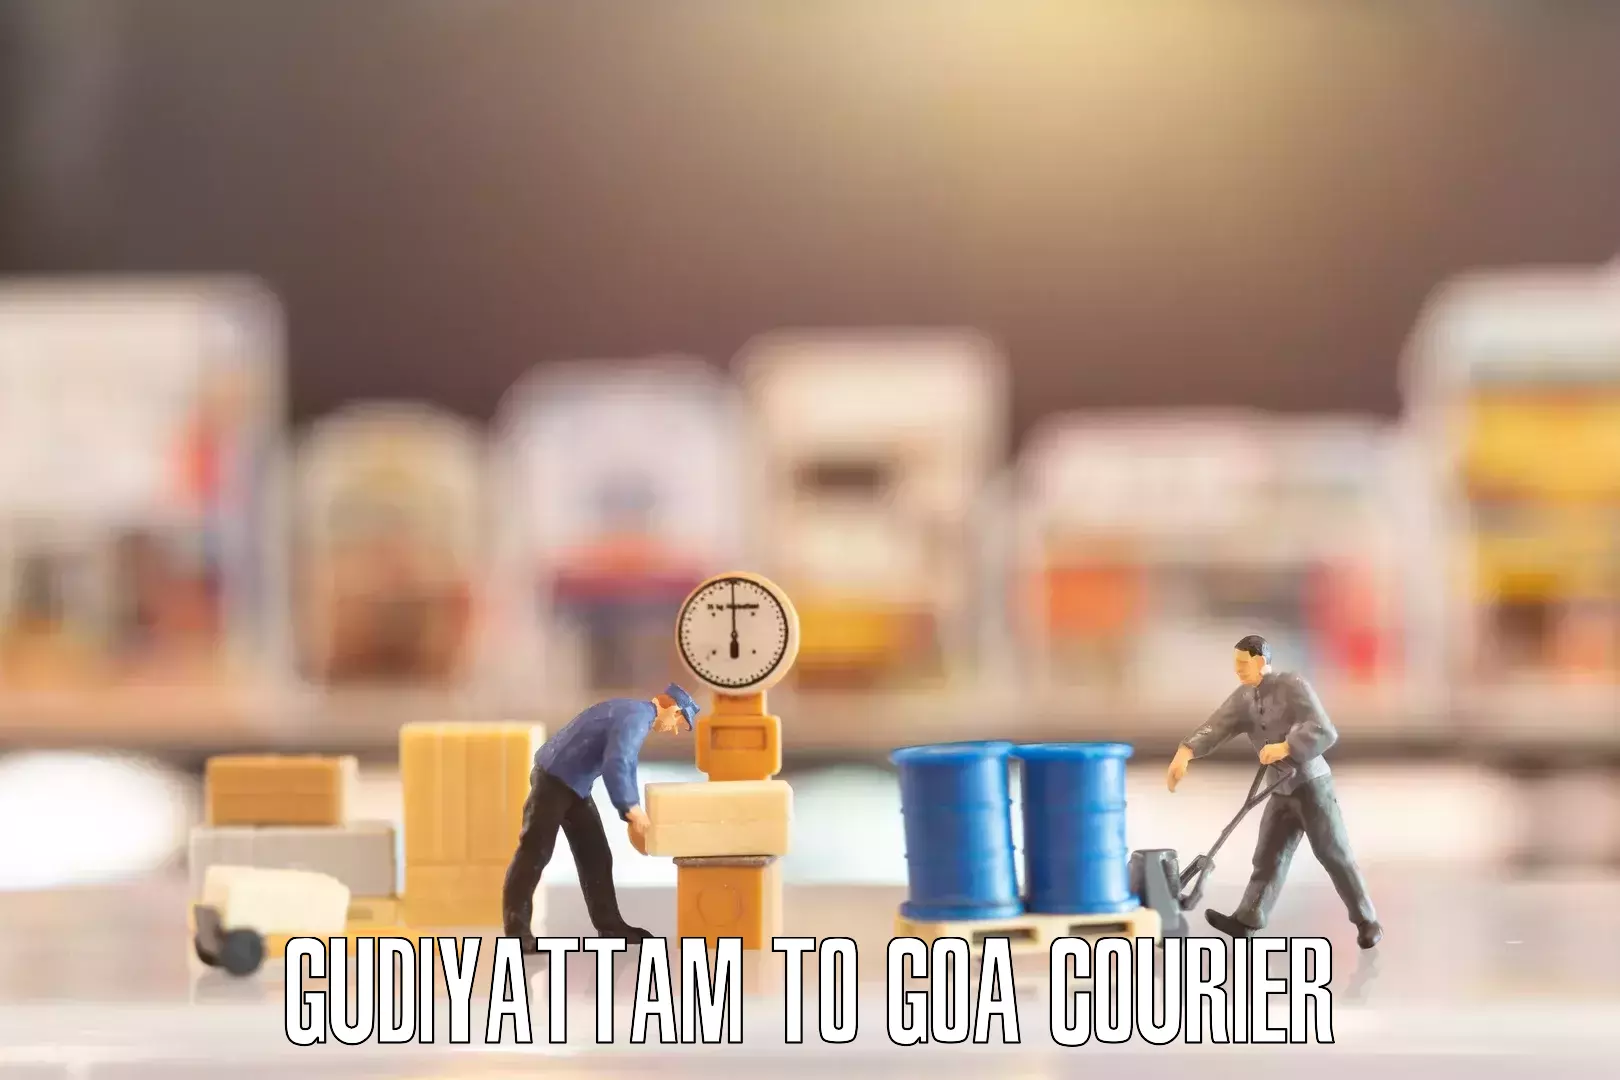 Furniture transport company Gudiyattam to Bardez